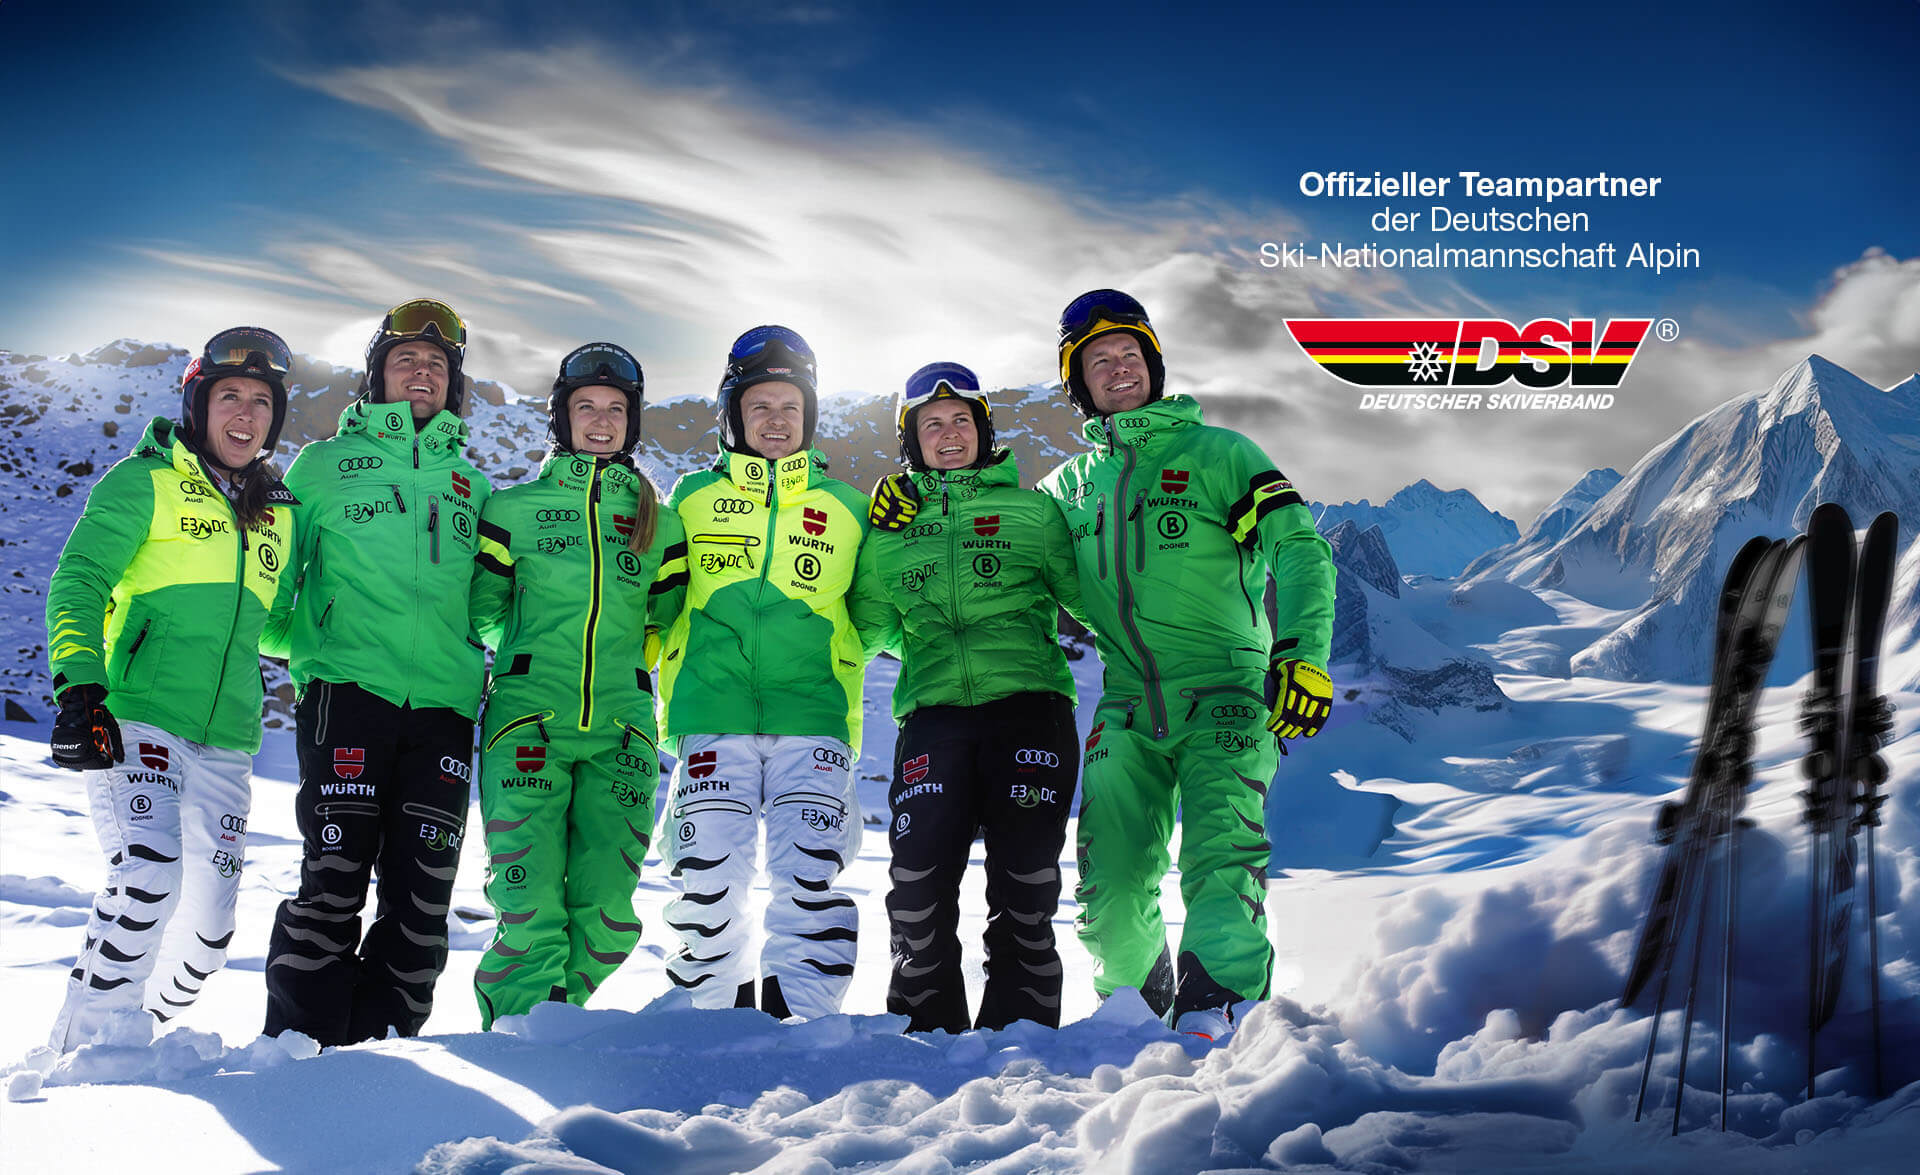 E3/DC ist offizieller Teampartner der Deutschen Ski-Nationalmannschaft Alpin